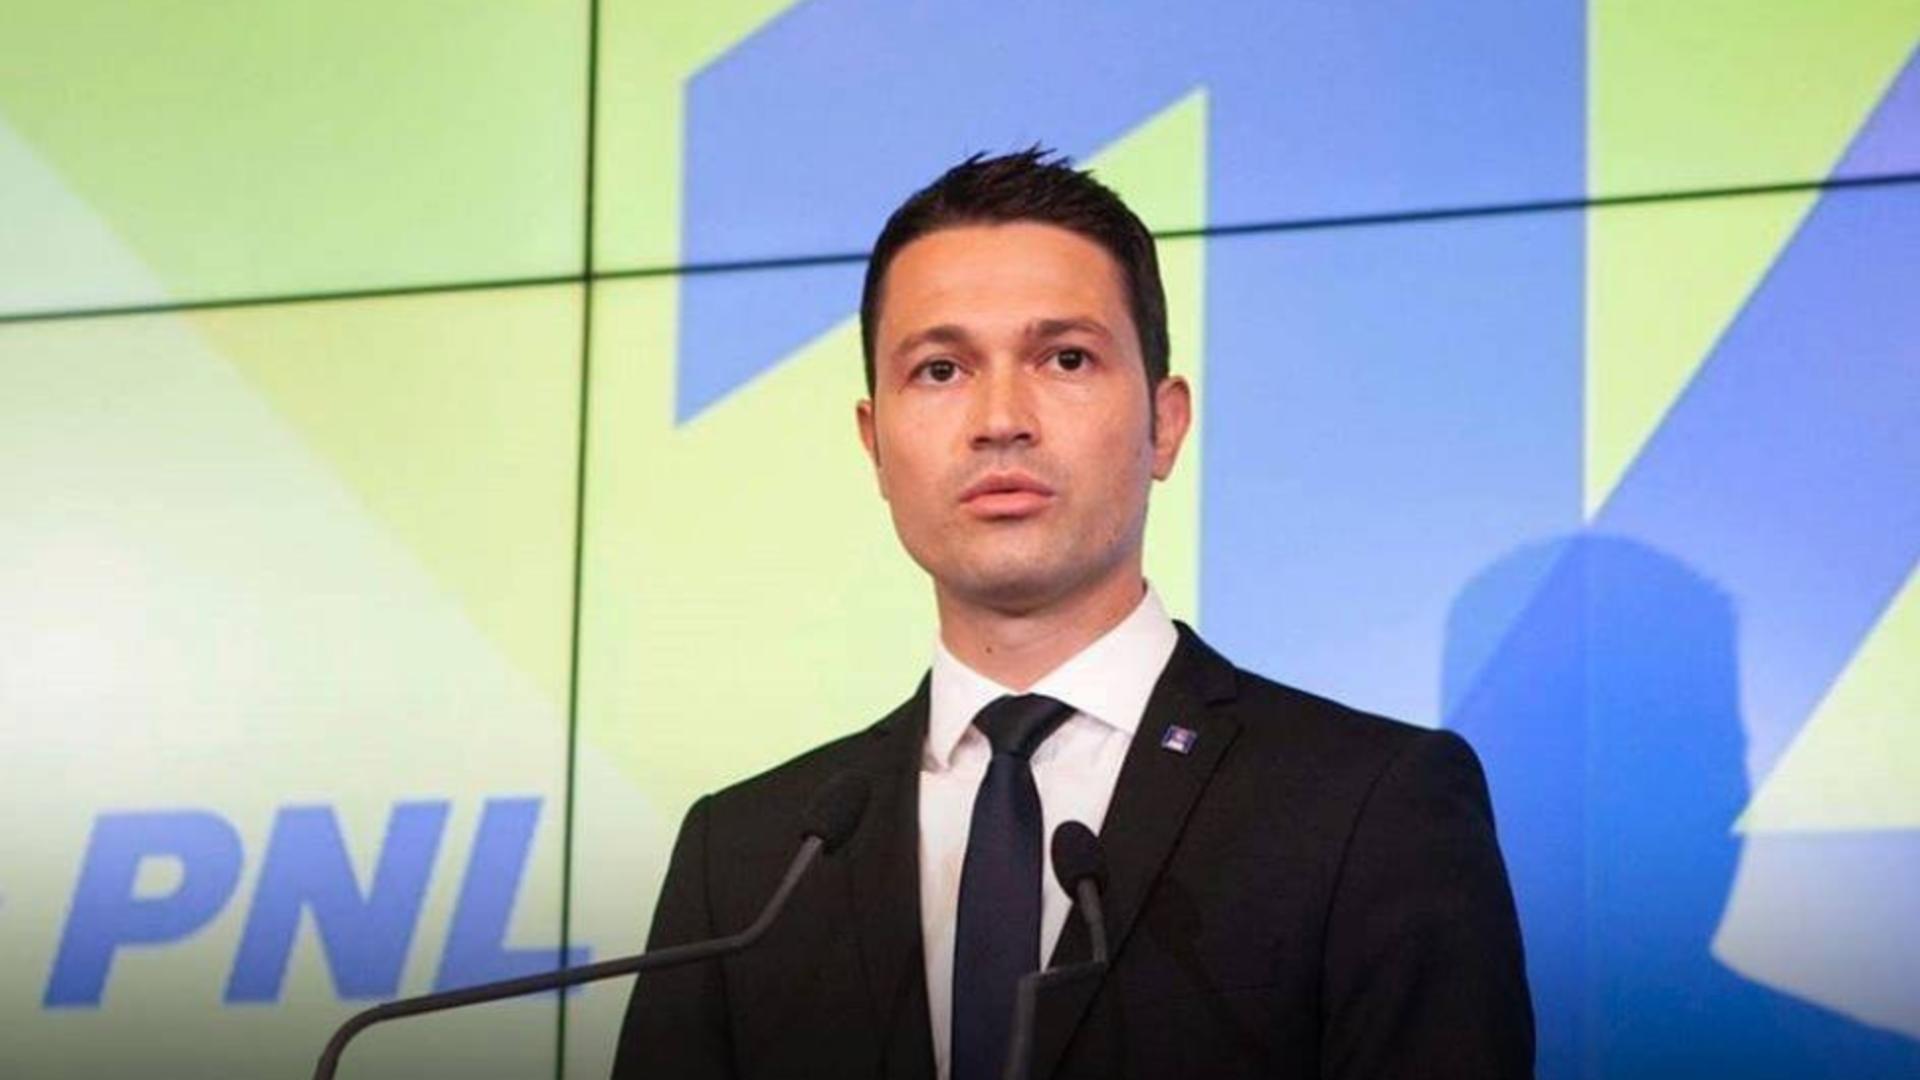 Robert Sighiartău: Personal, voi face campanie împotriva PSD